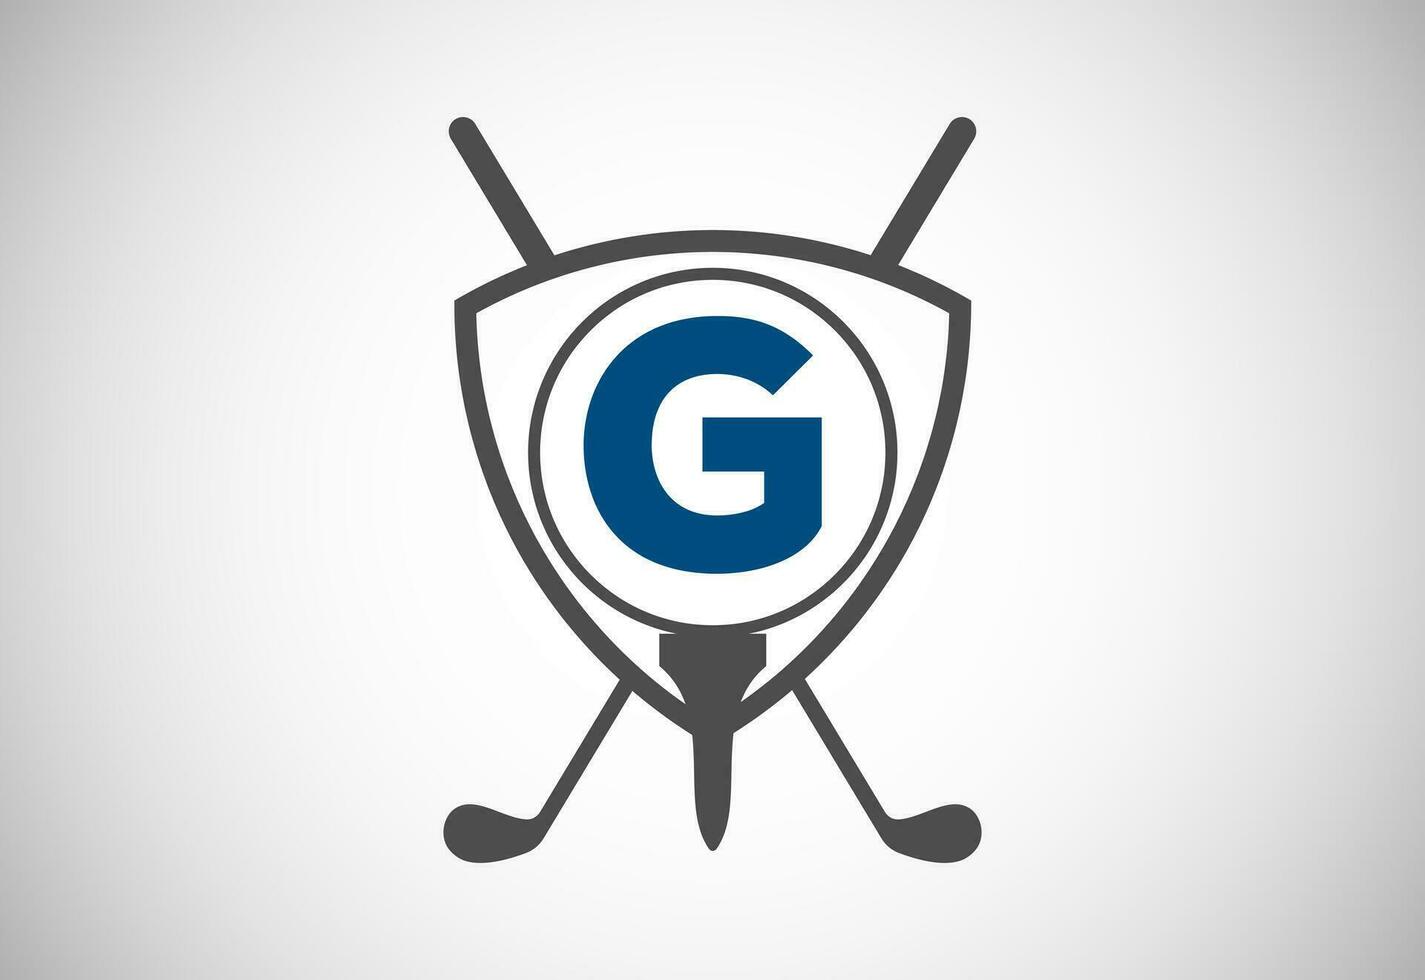 Engels alfabet g met golf bal, golf stok en schild teken. modern logo ontwerp voor golf Clubs. vector